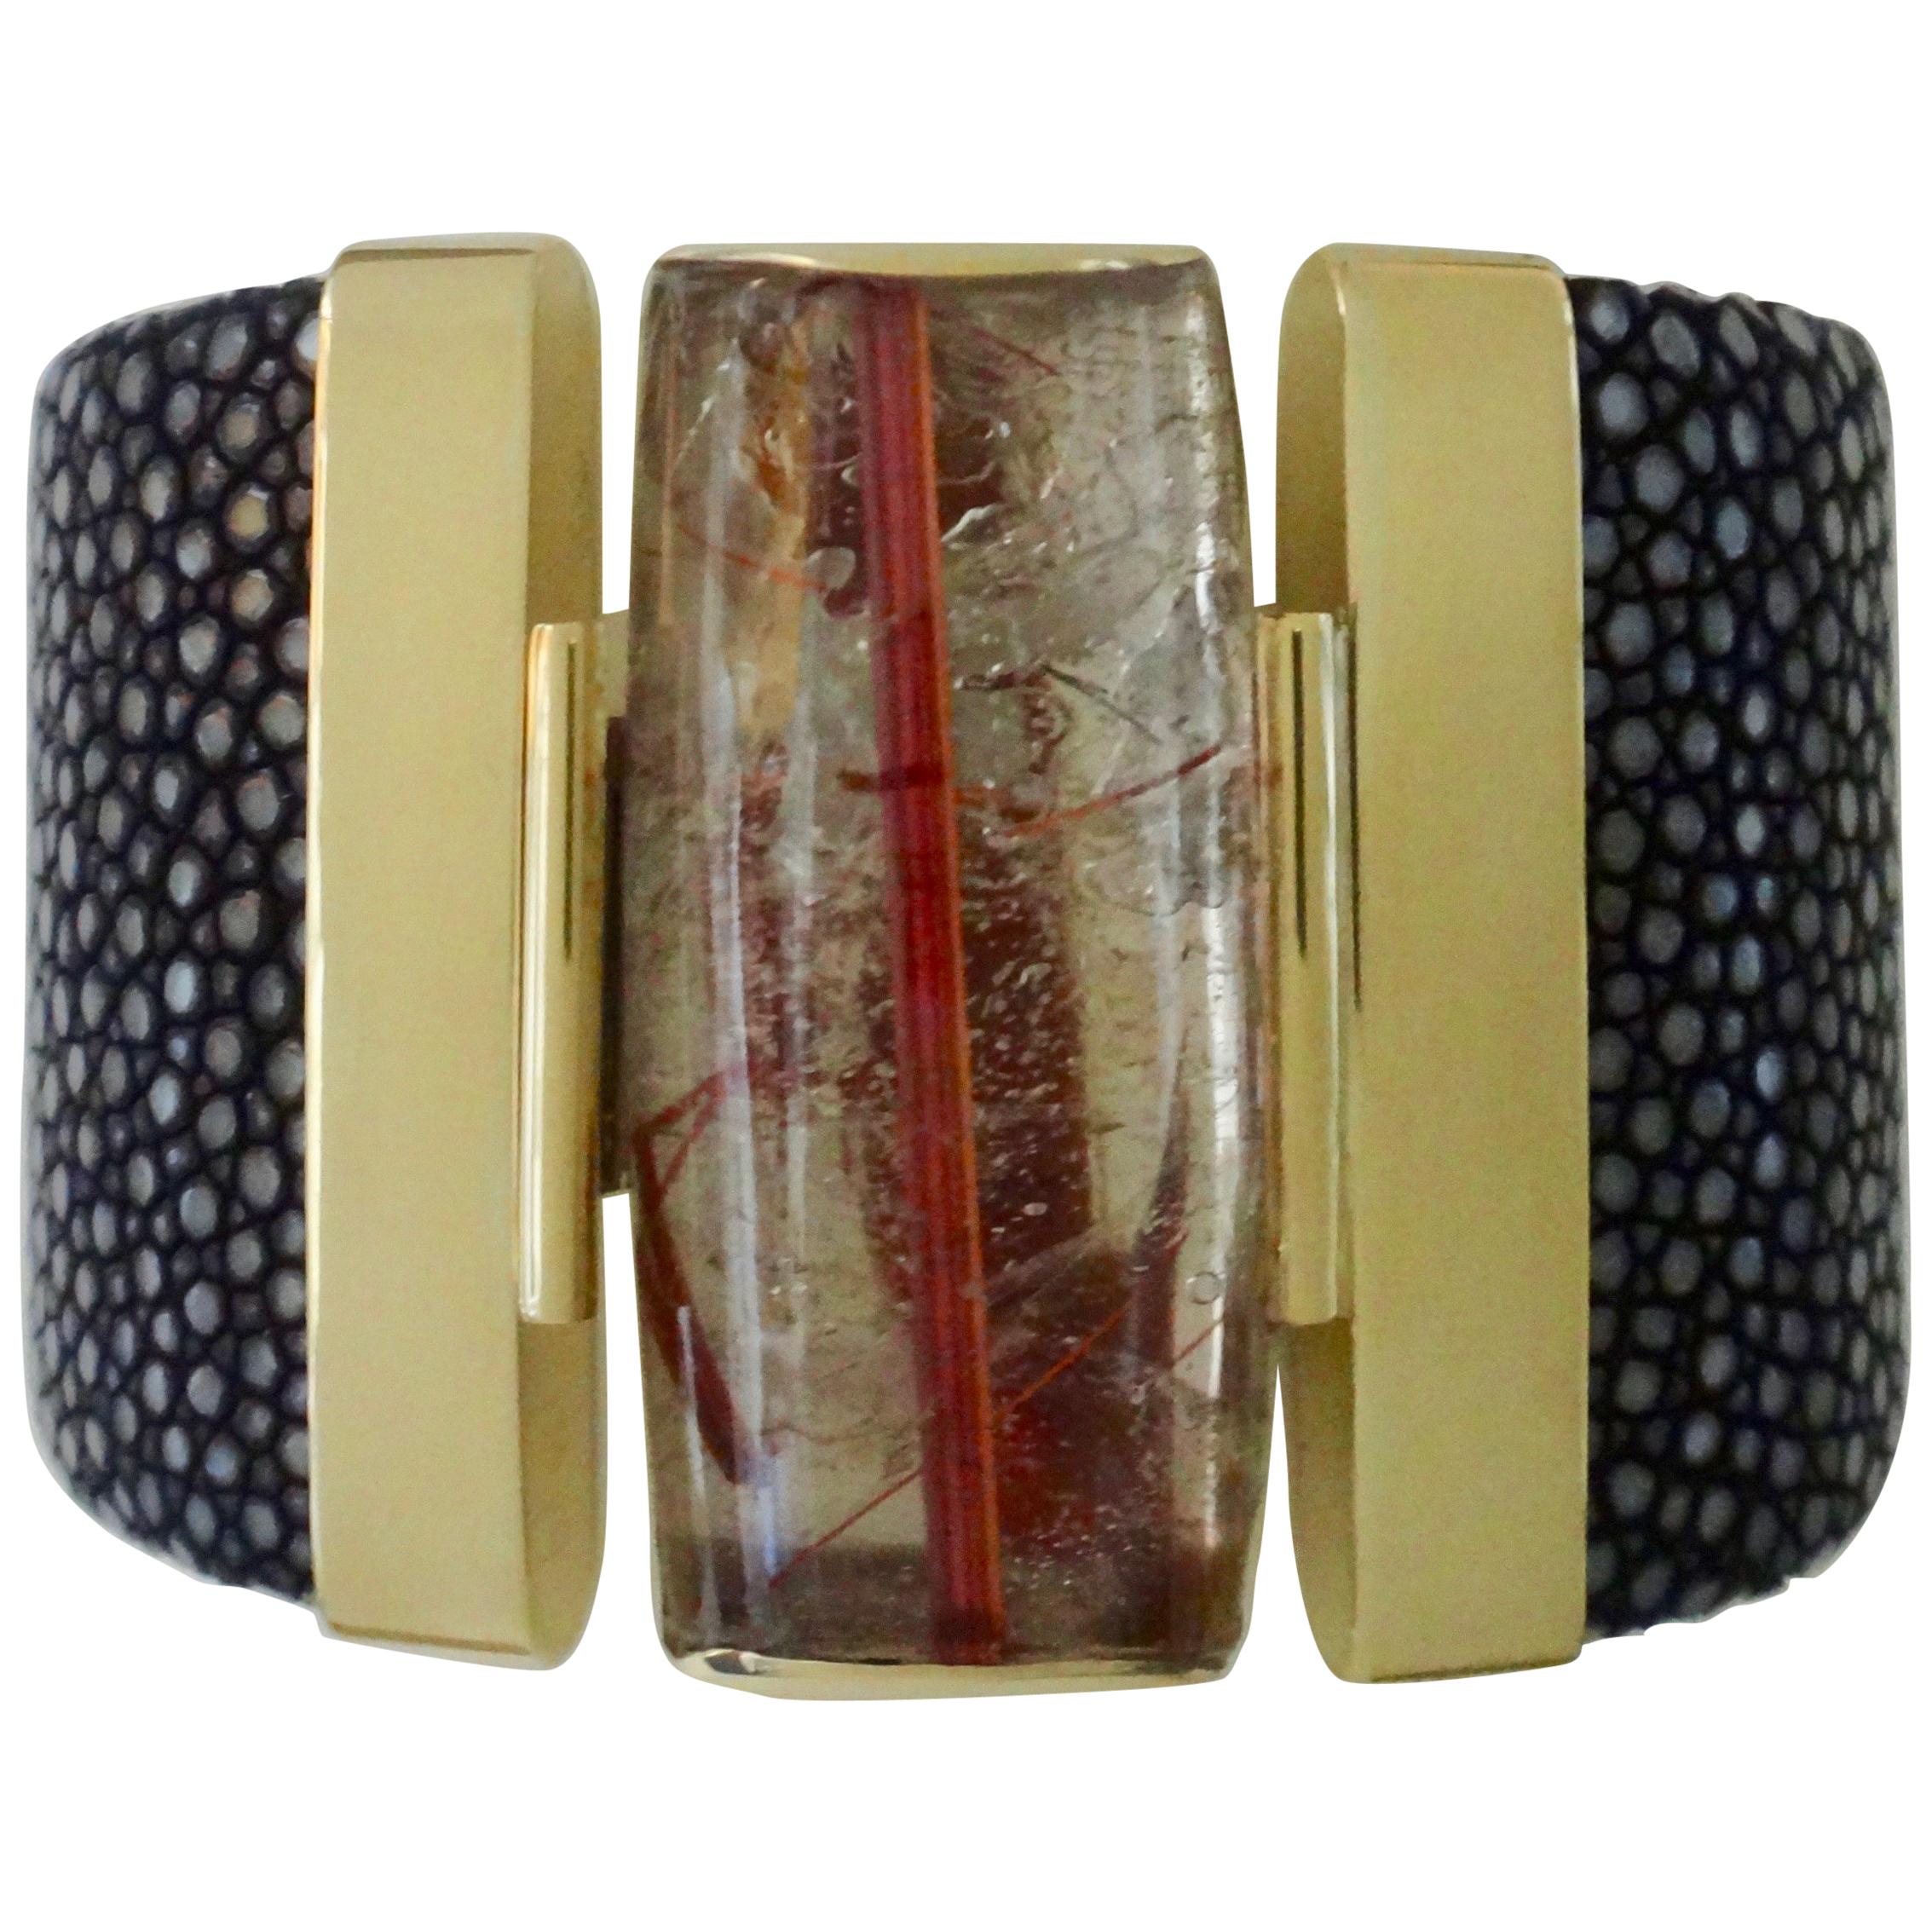 Un extraordinaire spécimen de quartz rutilé (origine : Brésil) est mis en valeur dans ce bracelet manchette audacieux.  Le quartz rutile fait partie d'une vaste famille de gemmes comprenant l'améthyste et la citrine.   Dans cet exemple, le quartz